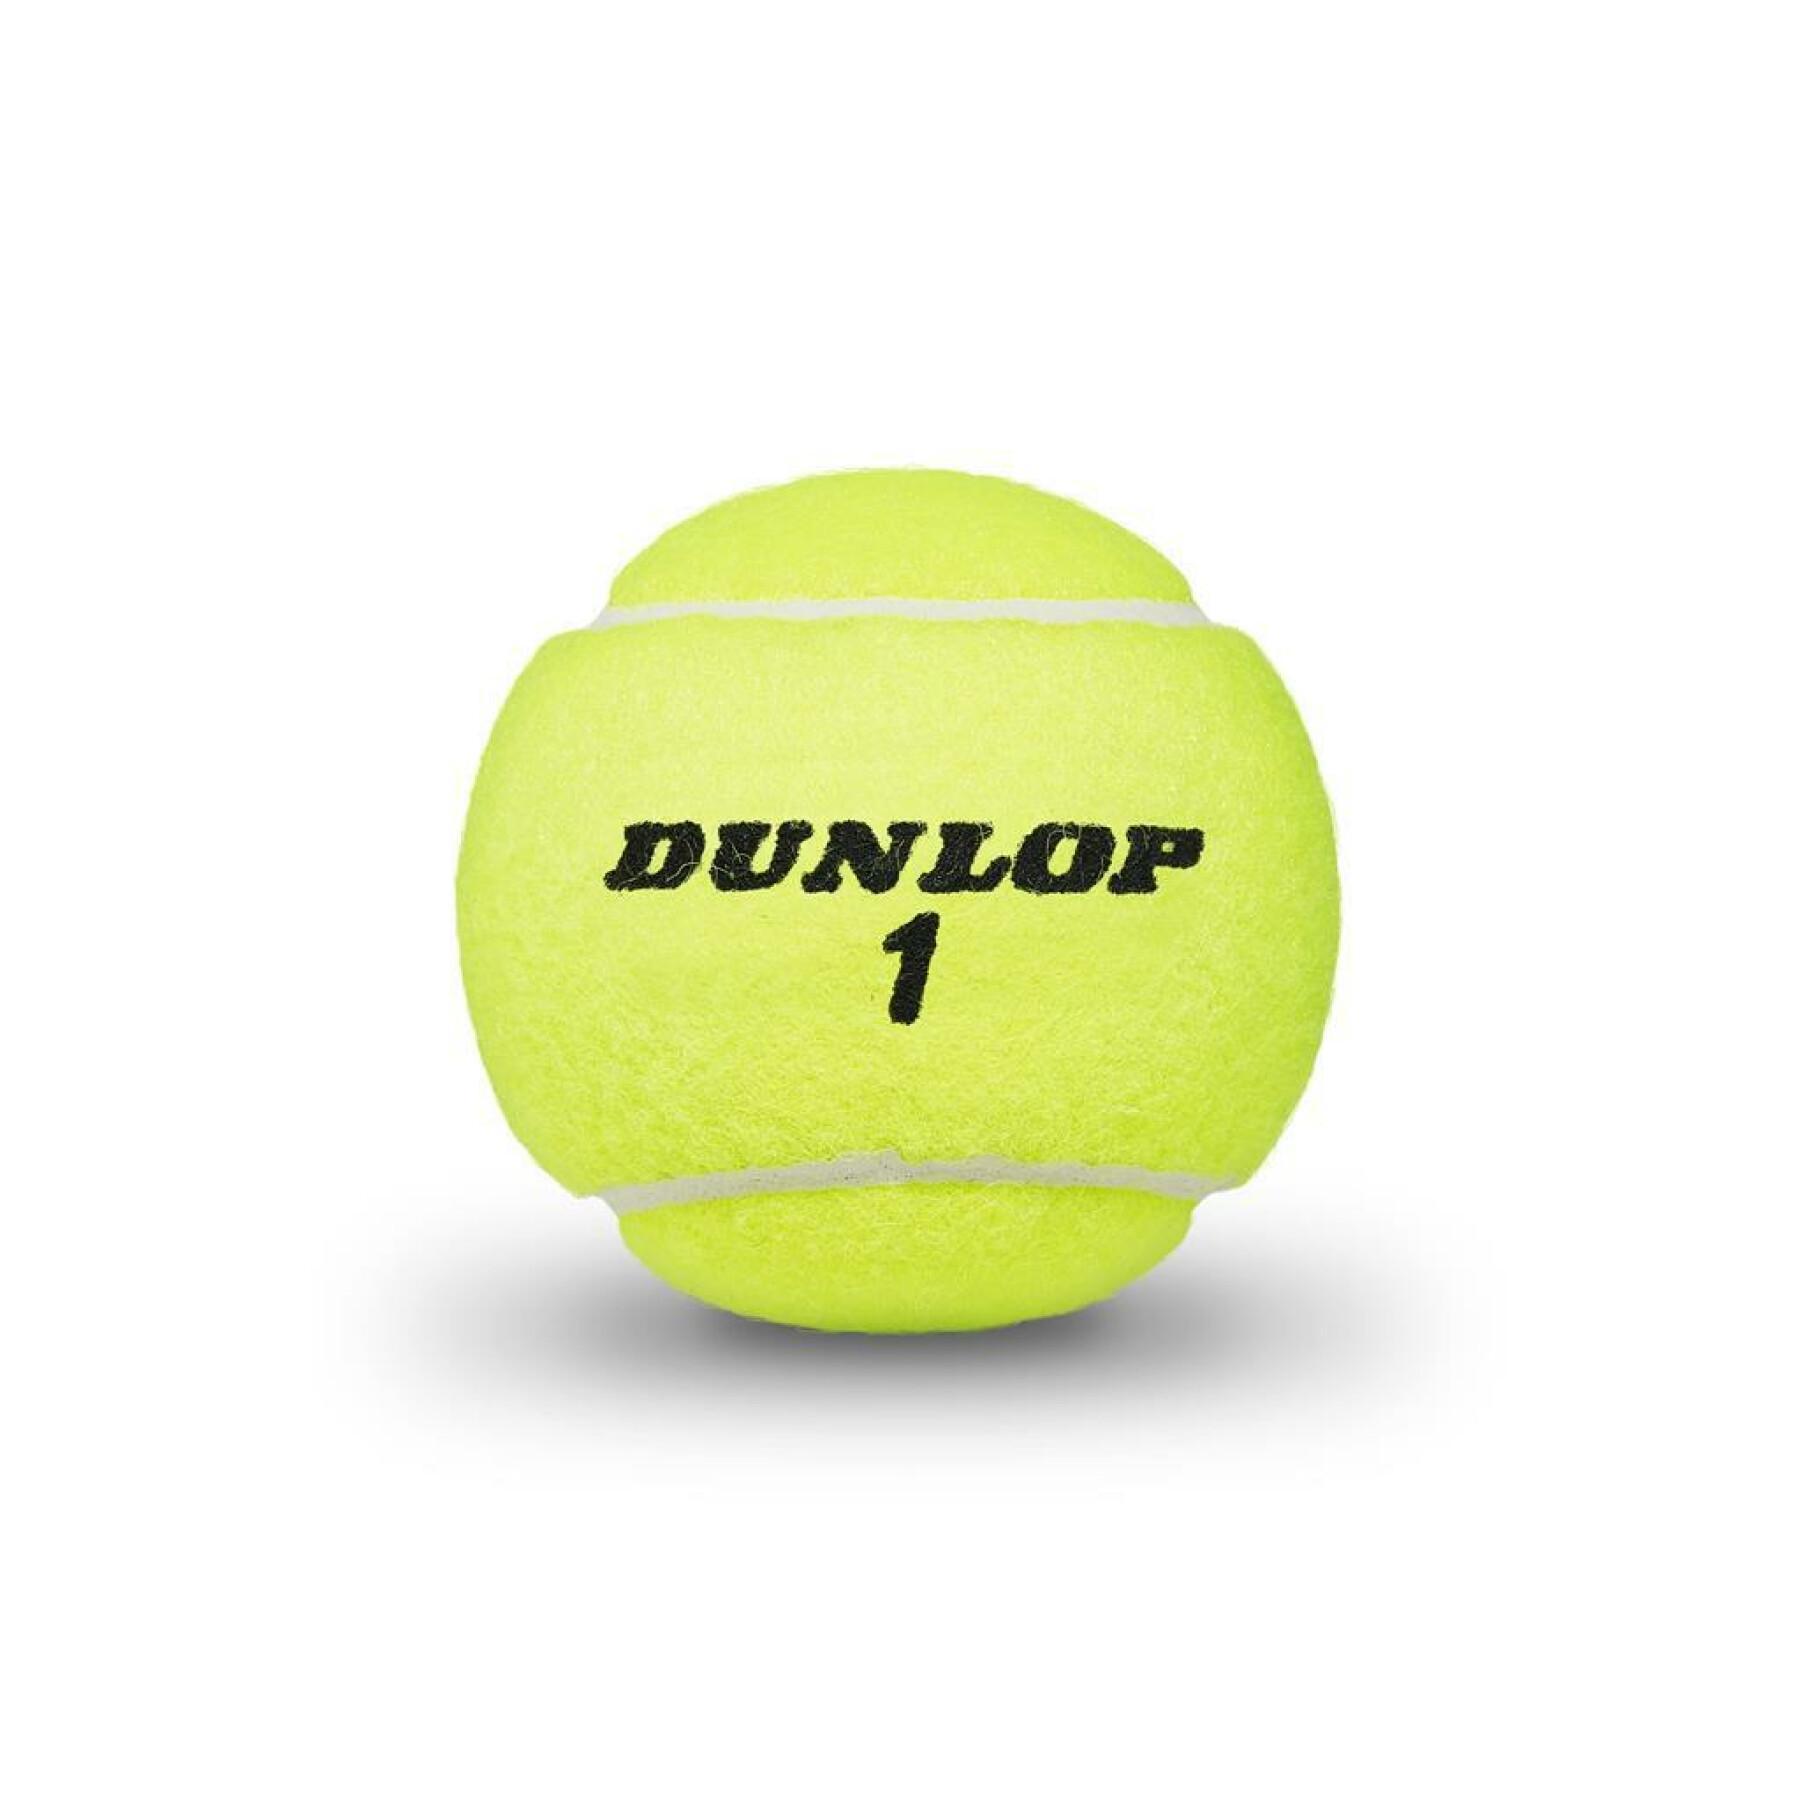 Conjunto de 3 bolas de ténis Dunlop extra life